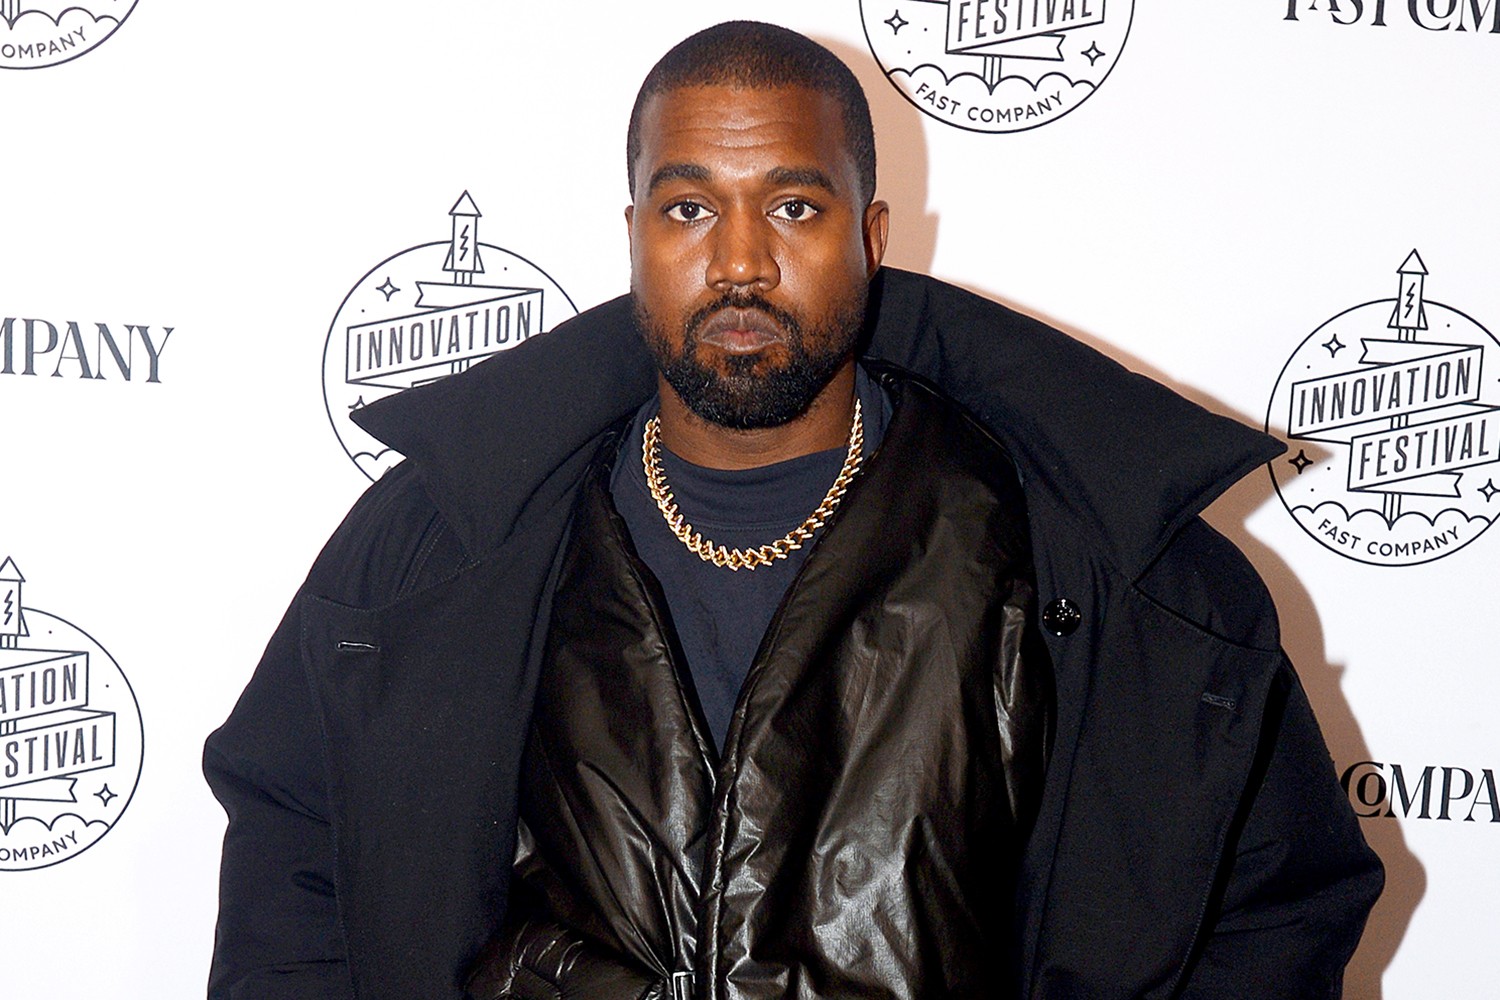 Kanye West Từ Chối Hợp Đồng Trị Giá $100M Với Apple - “Donda 2” Chỉ Được Phát Hành Thông Qua Stem Player